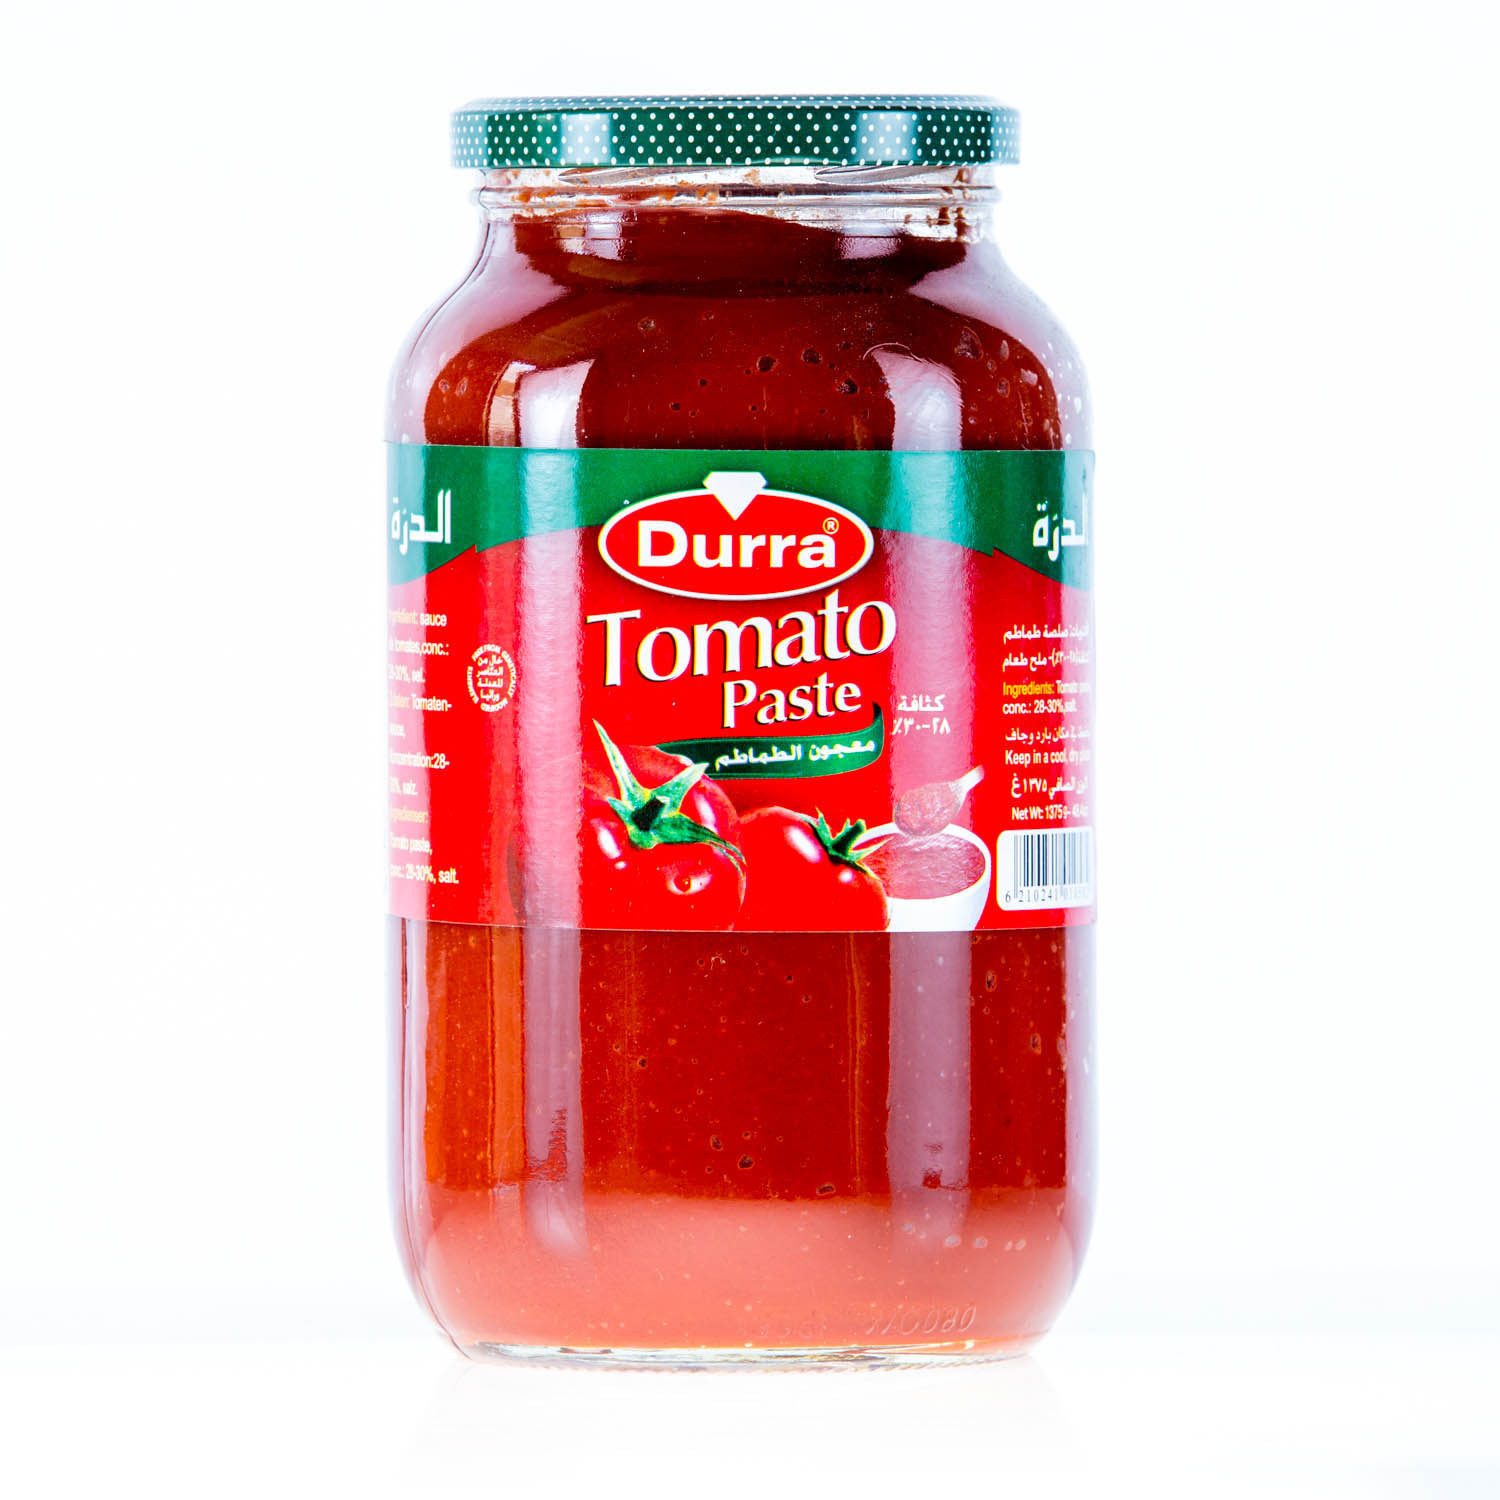 Tomato Sauce From Tomato Paste
 Durra Tomato Paste 1 375kg $5 – Omara Imports & Exports